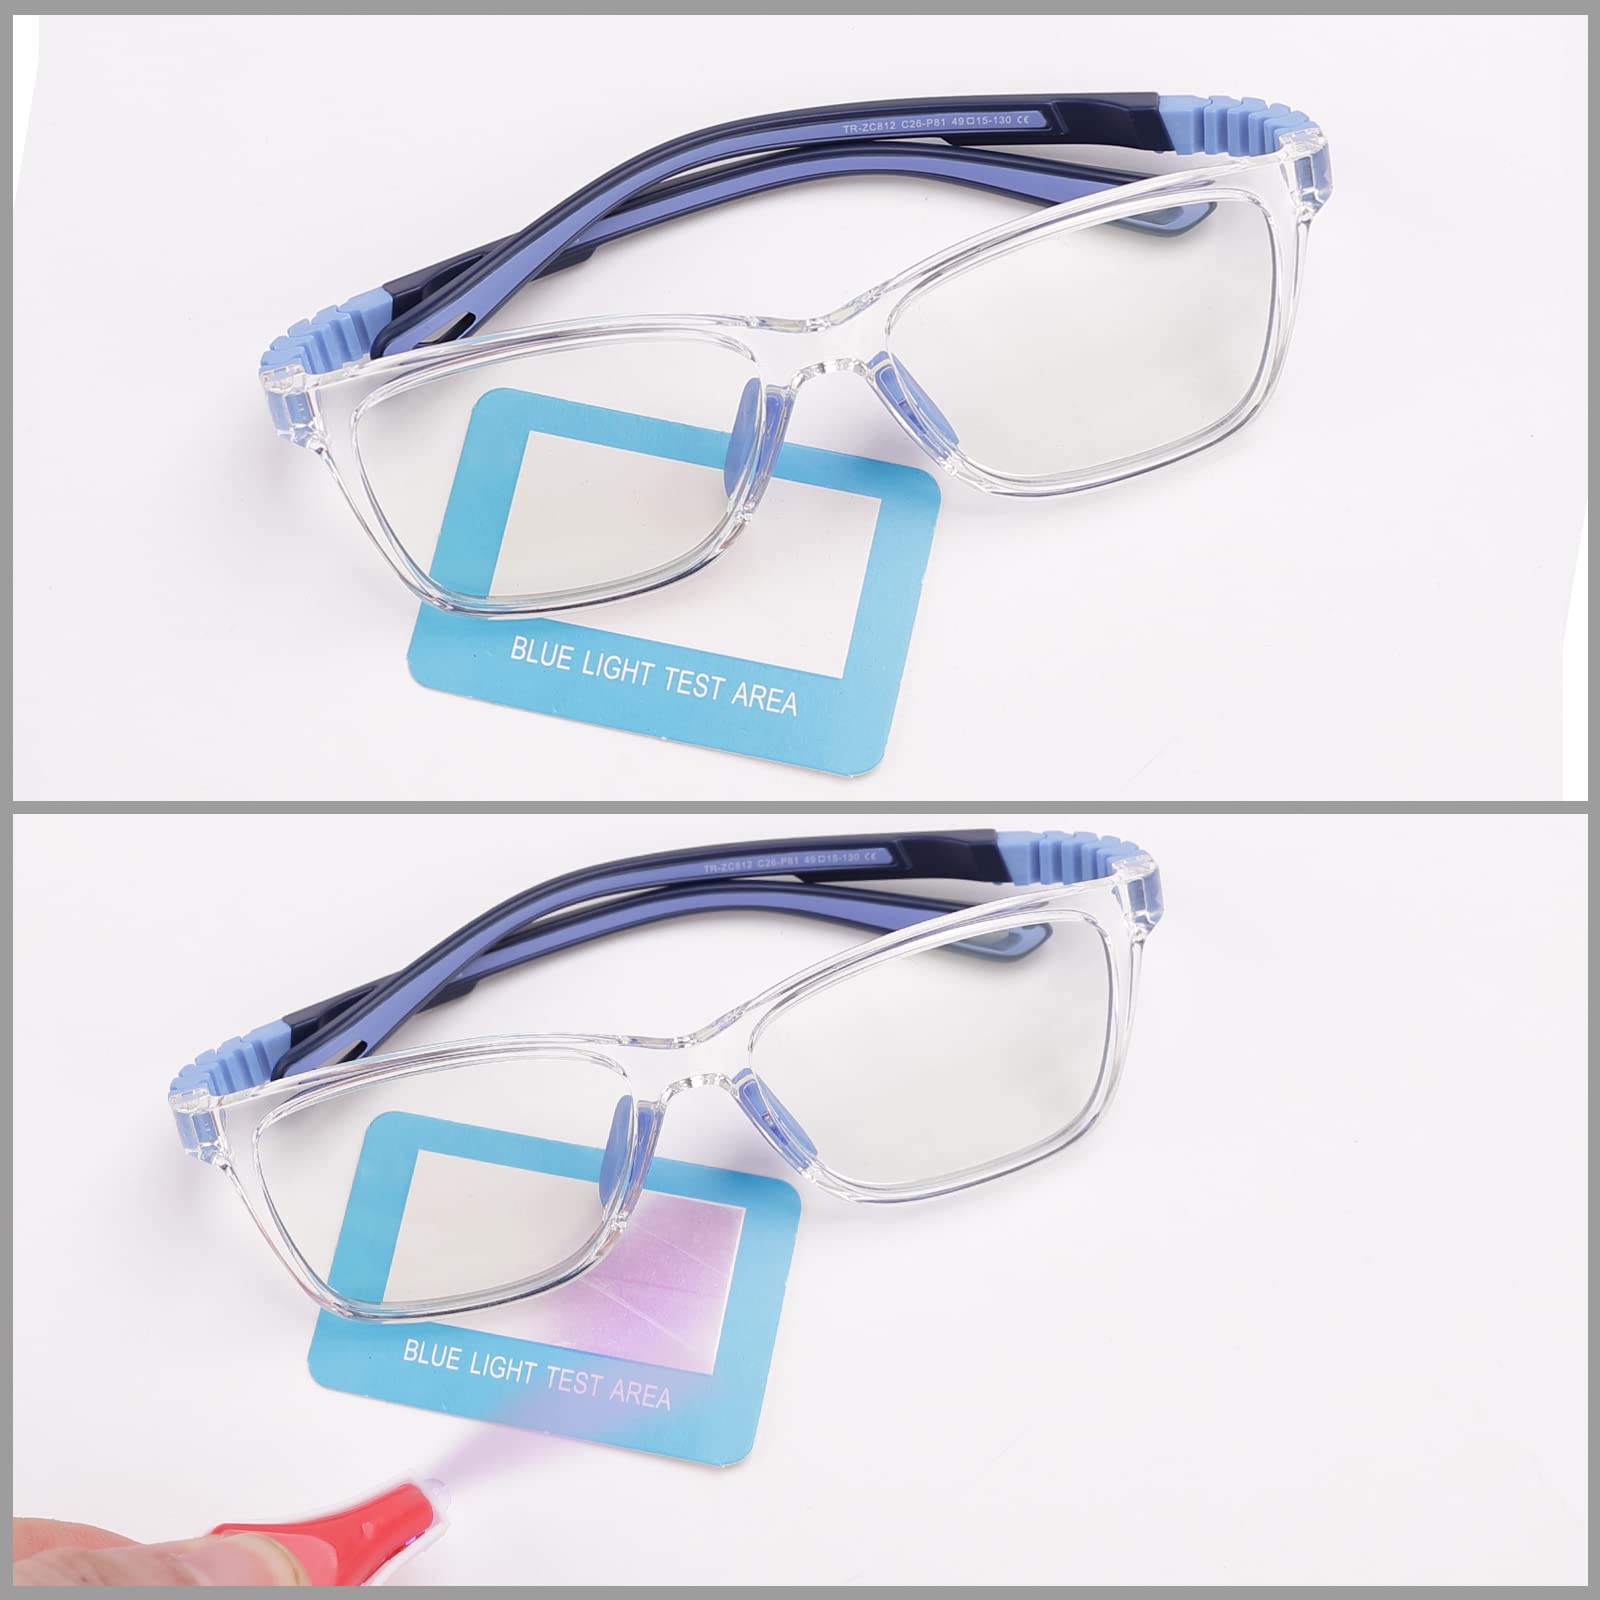 Intellilens Wayfarer Kids Computer Glasses for Eye Protection | Zero Power, Anti Glare & Blue Light Filter Glasses | Blue Cut Lenses for Boys and Girls (Transparent) (49-15-130)